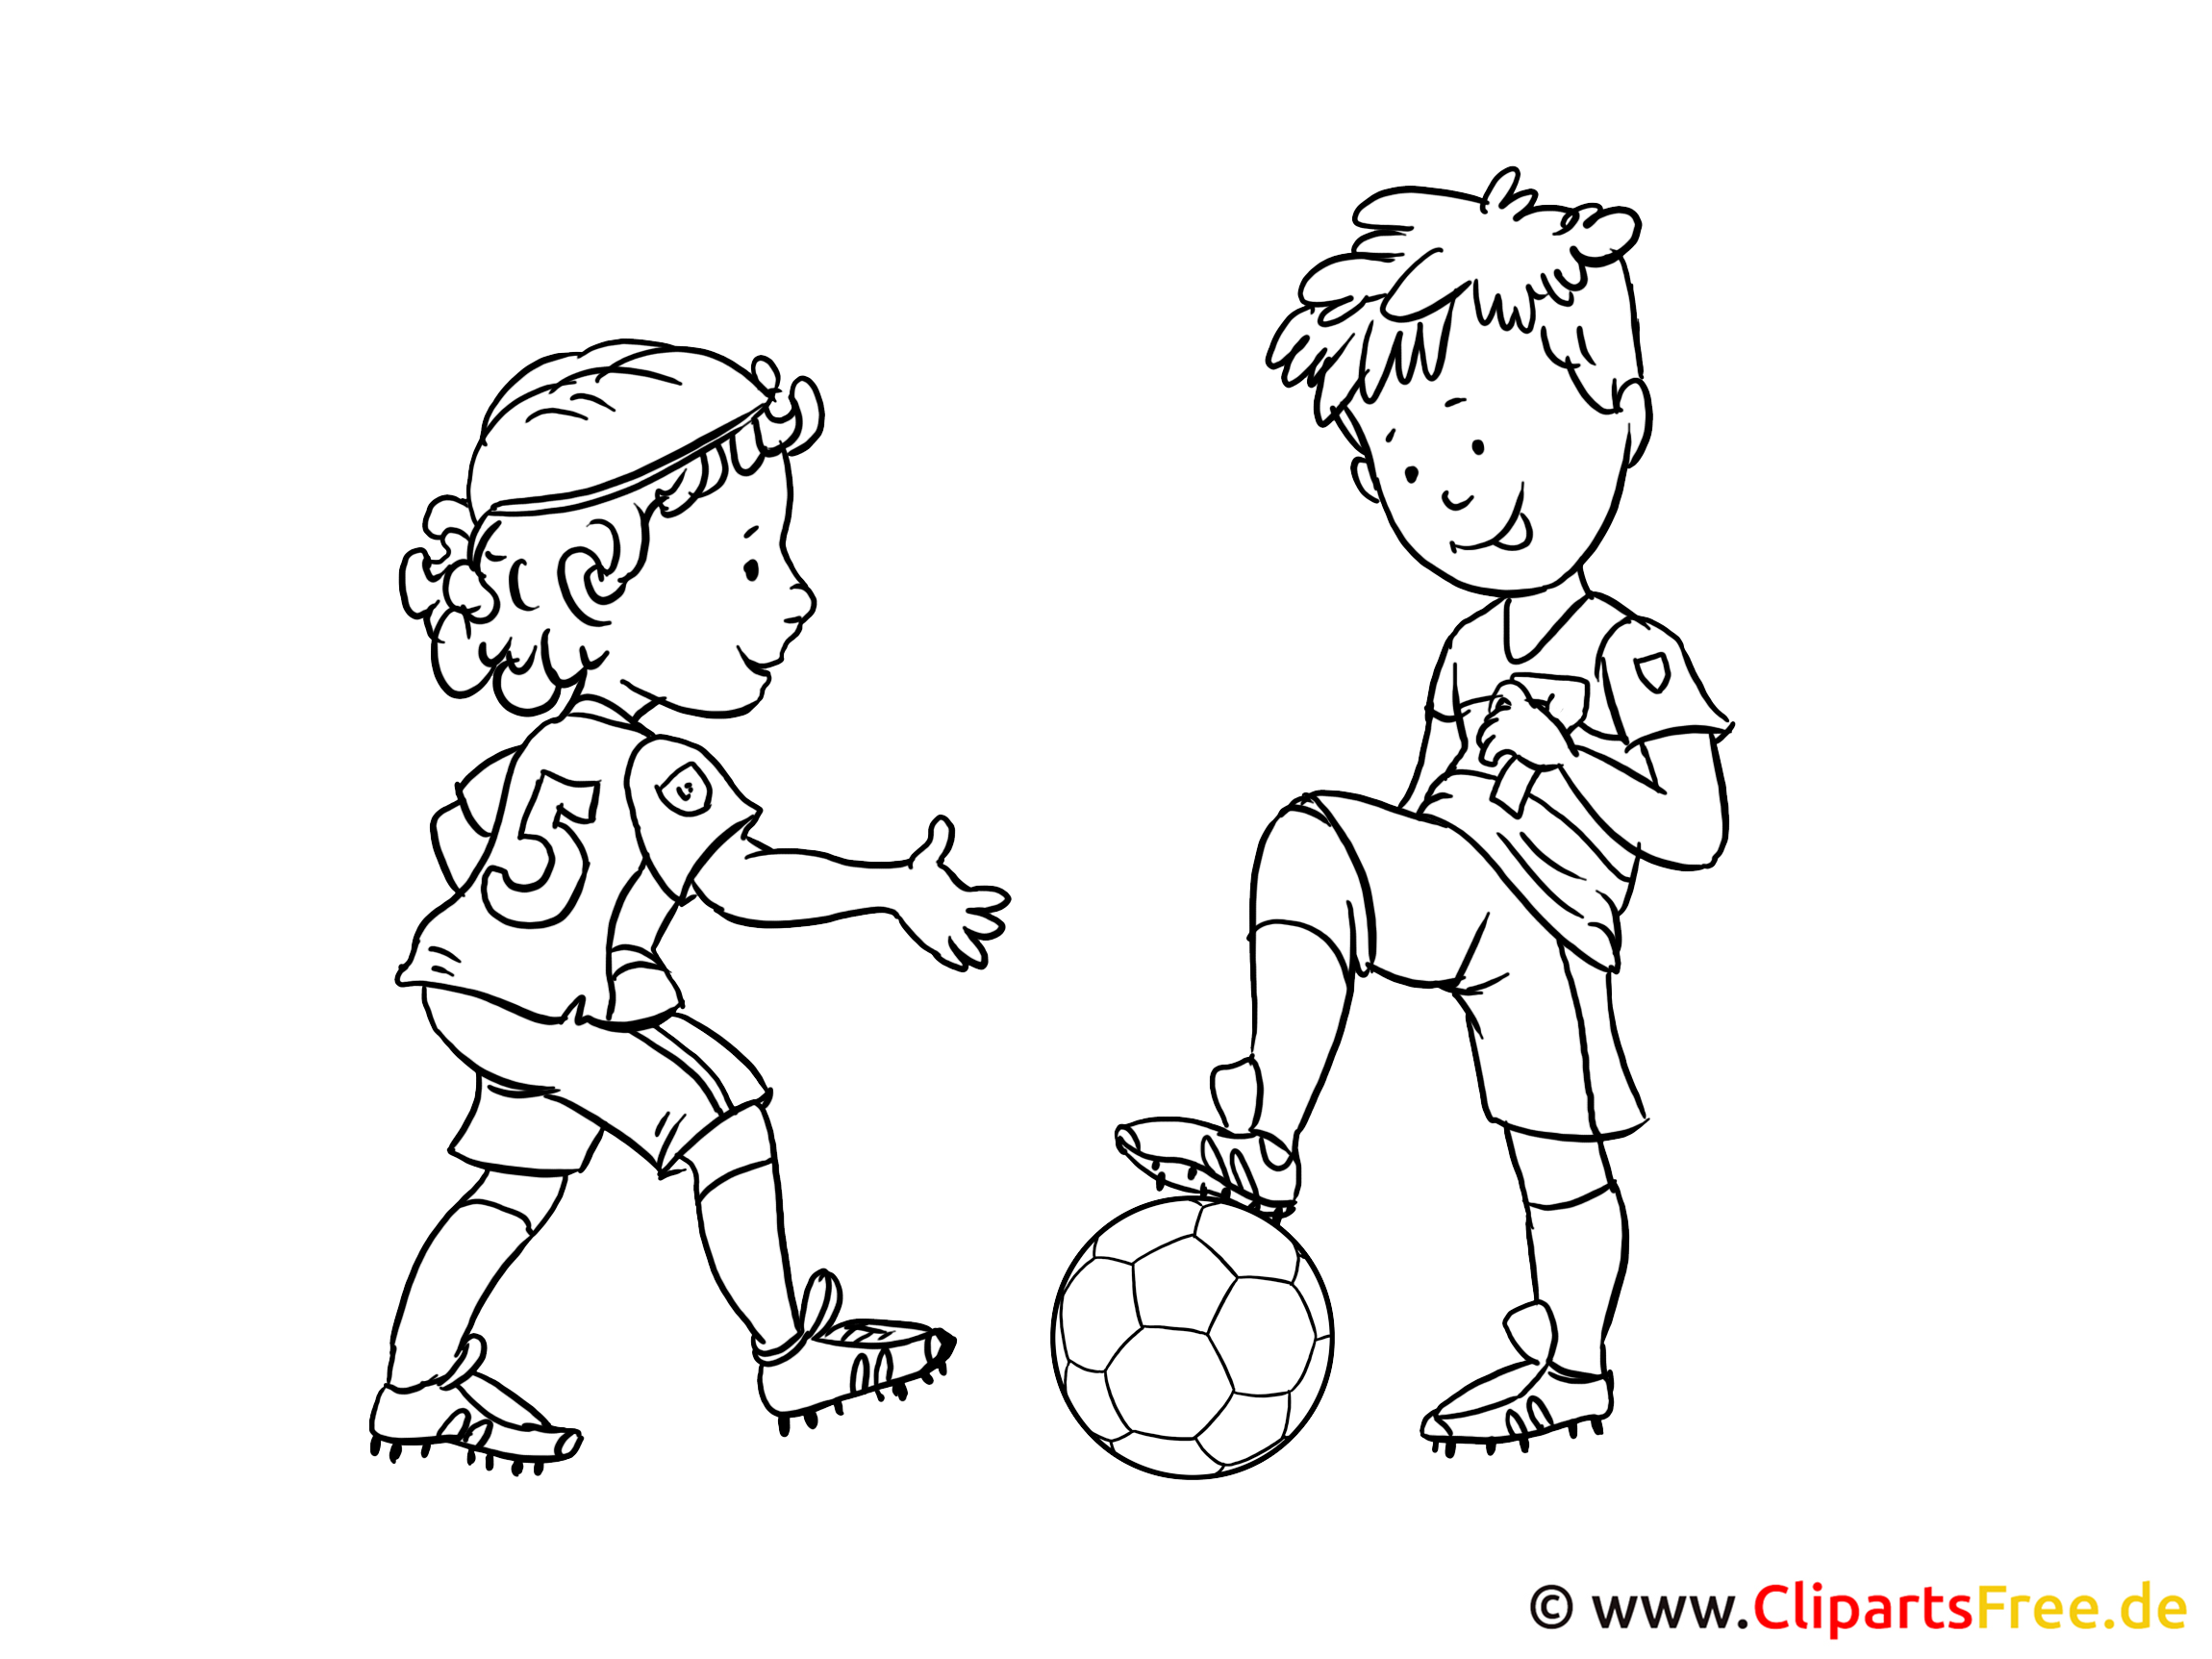 Рисунок рисовать играть. Раскраска игра в футбол. Футбол картинки для детей раскраски. Раскраска для мальчиков футбол. Мальчик с мячом раскраска для детей.